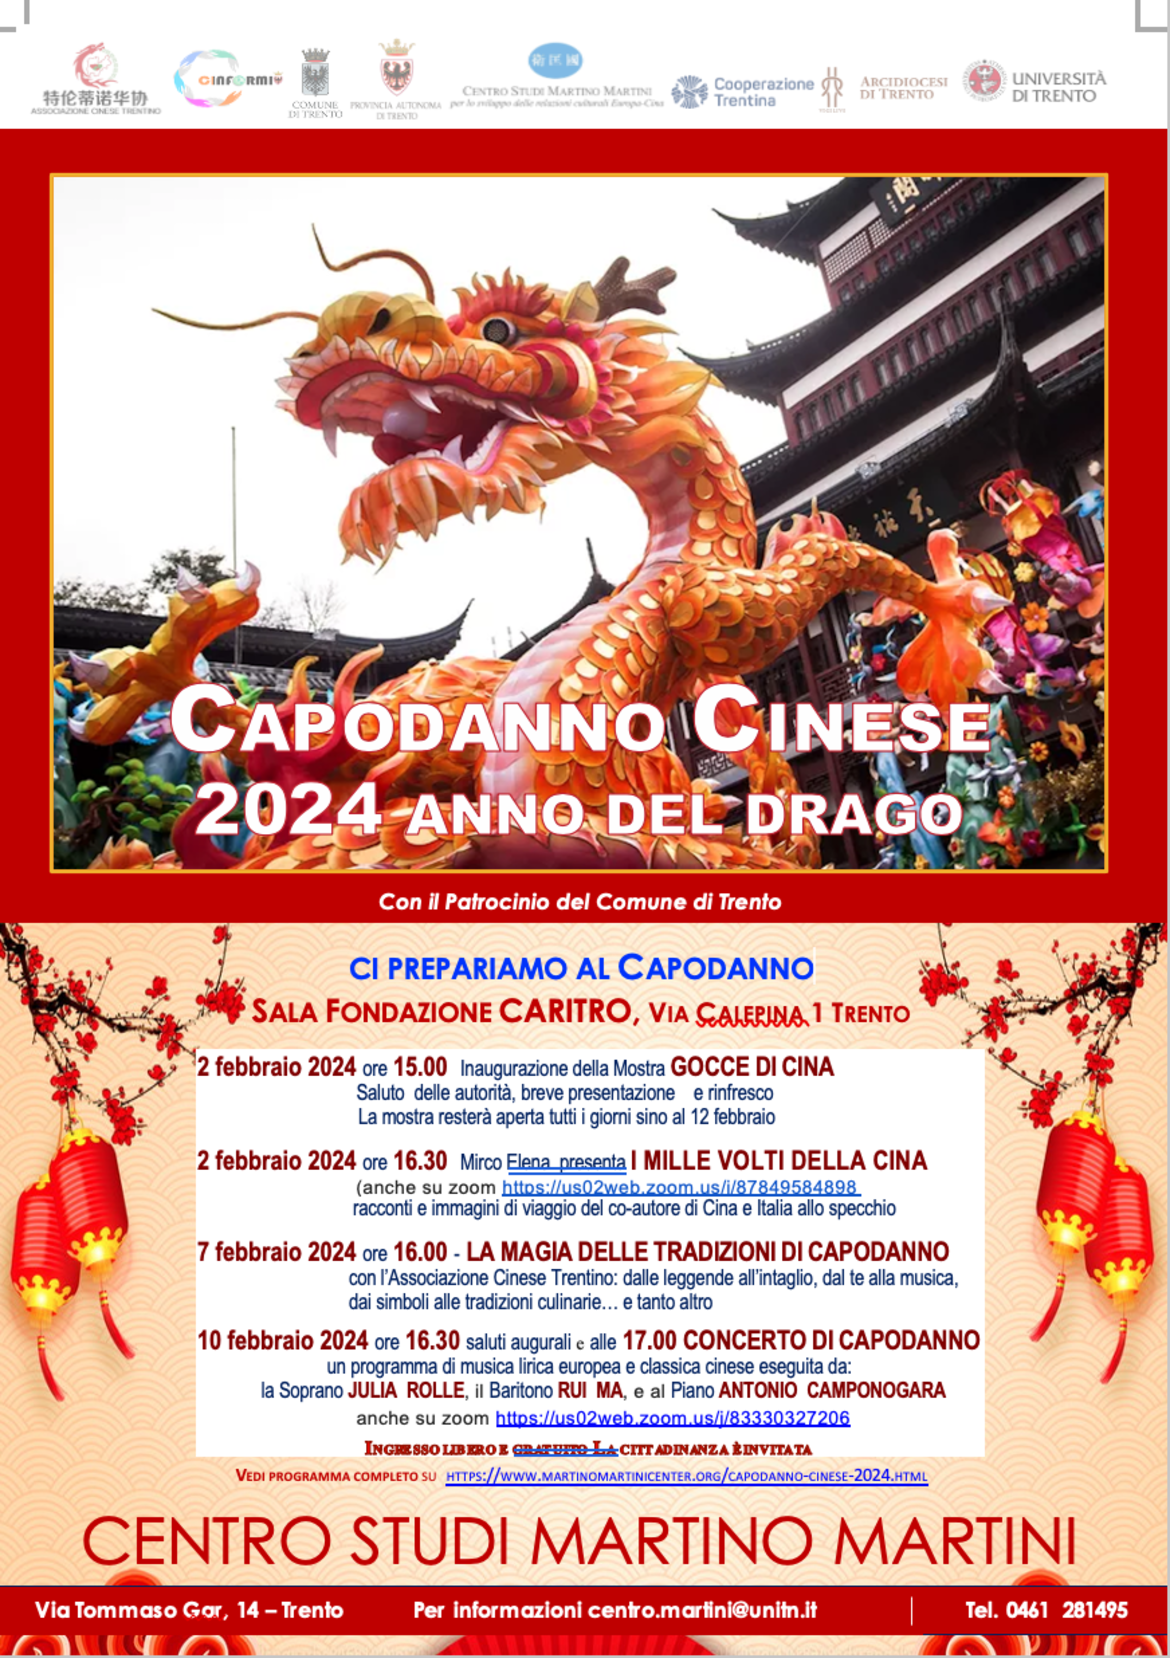 Capodanno Cinese - 2024 Anno del Drago - Trentino Cultura